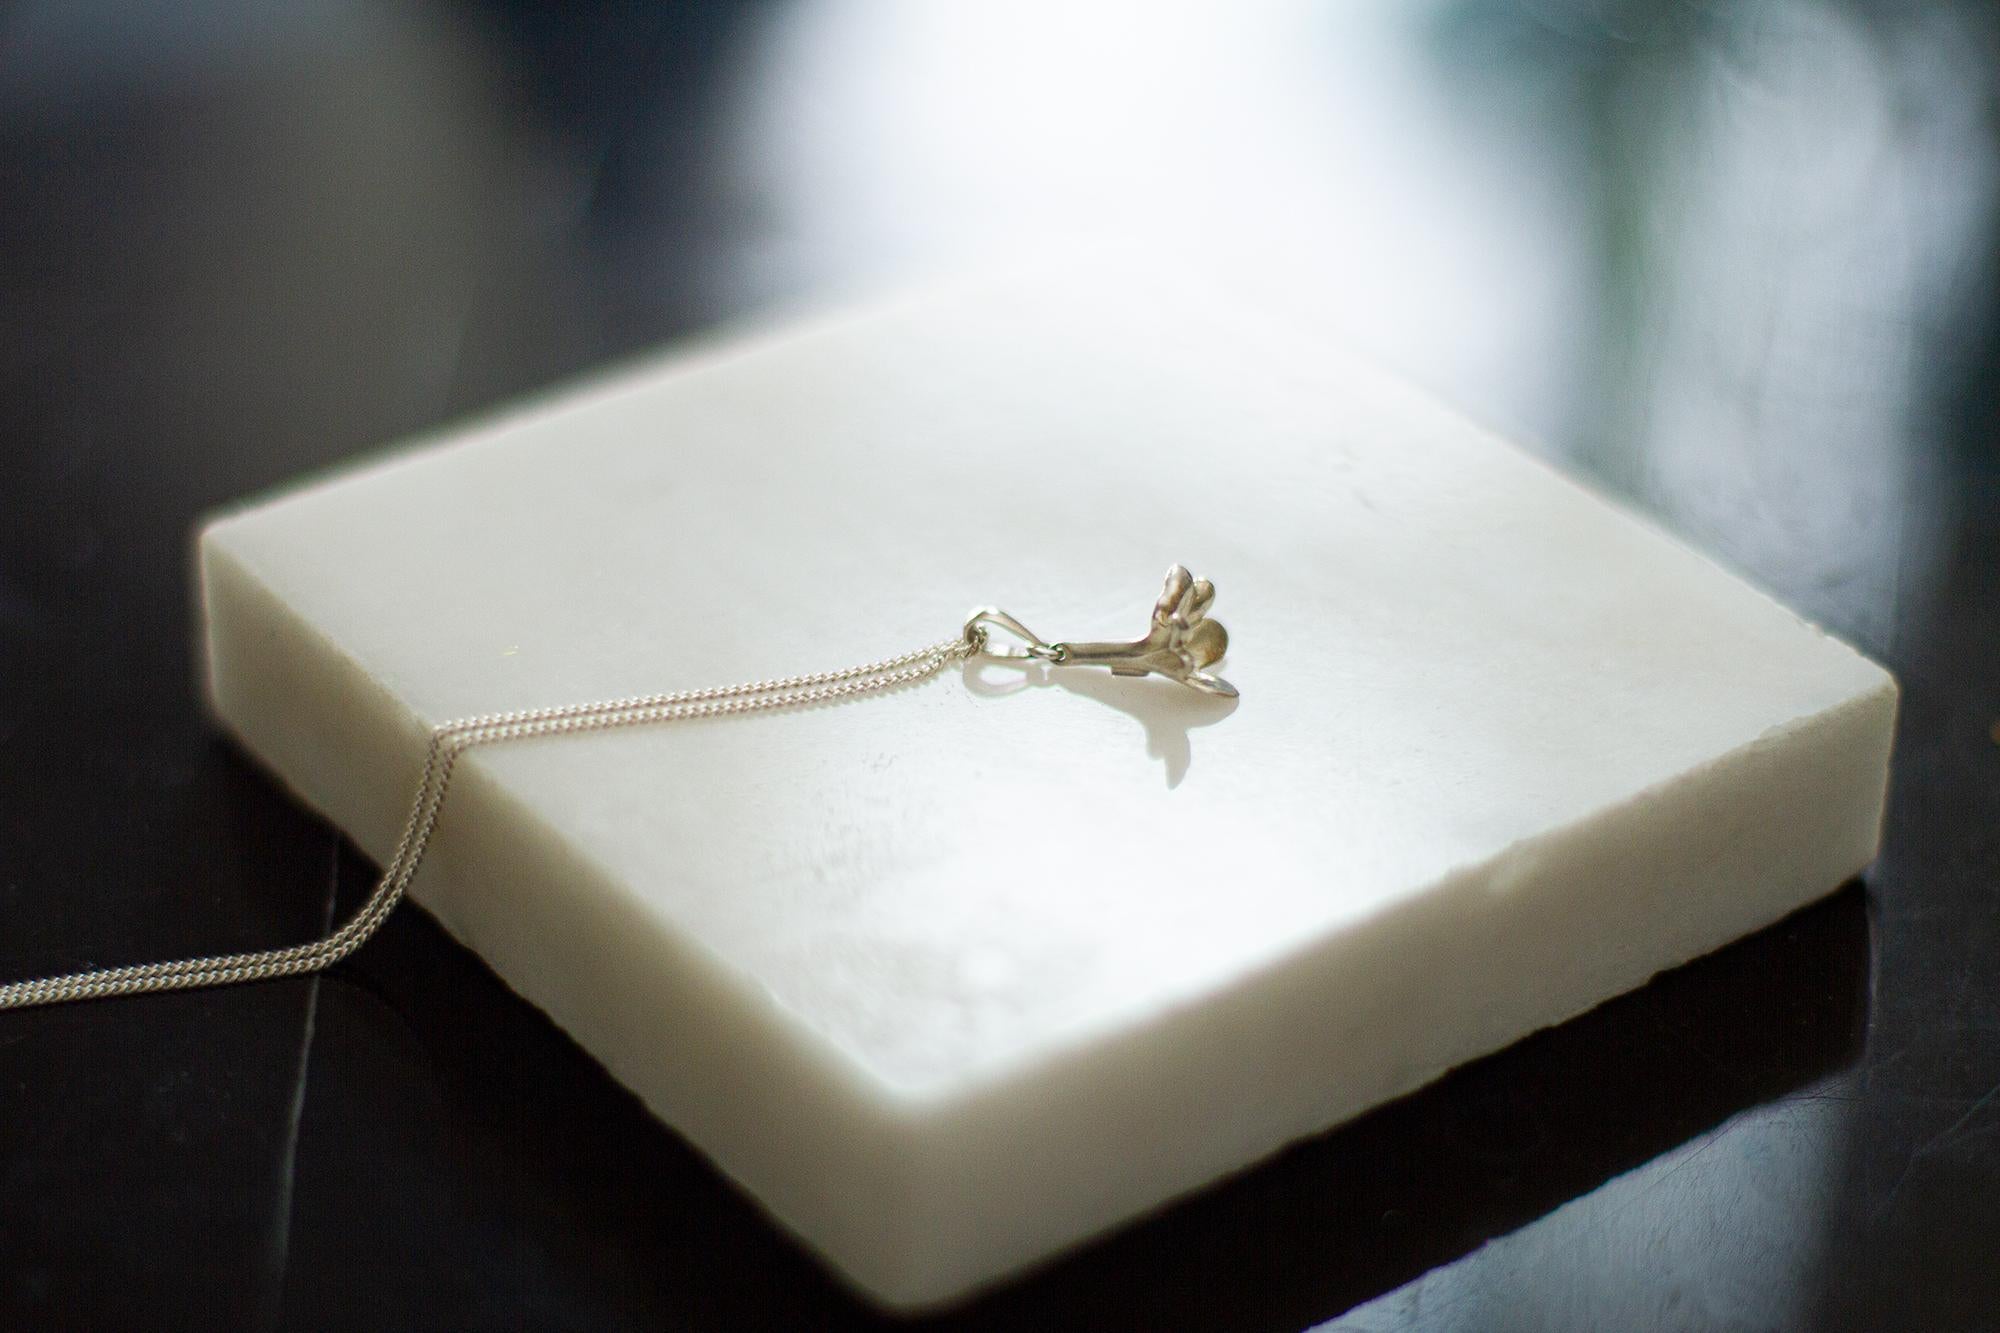 Le collier pendentif en argent sterling Bindweed appartient à la collection de bijoux Blossom, qui a été présentée dans Vogue et Harper's Bazaar UA. Cette collection de bijoux est conçue par une artiste peintre berlinoise, Polya Medvedeva. Il s'agit